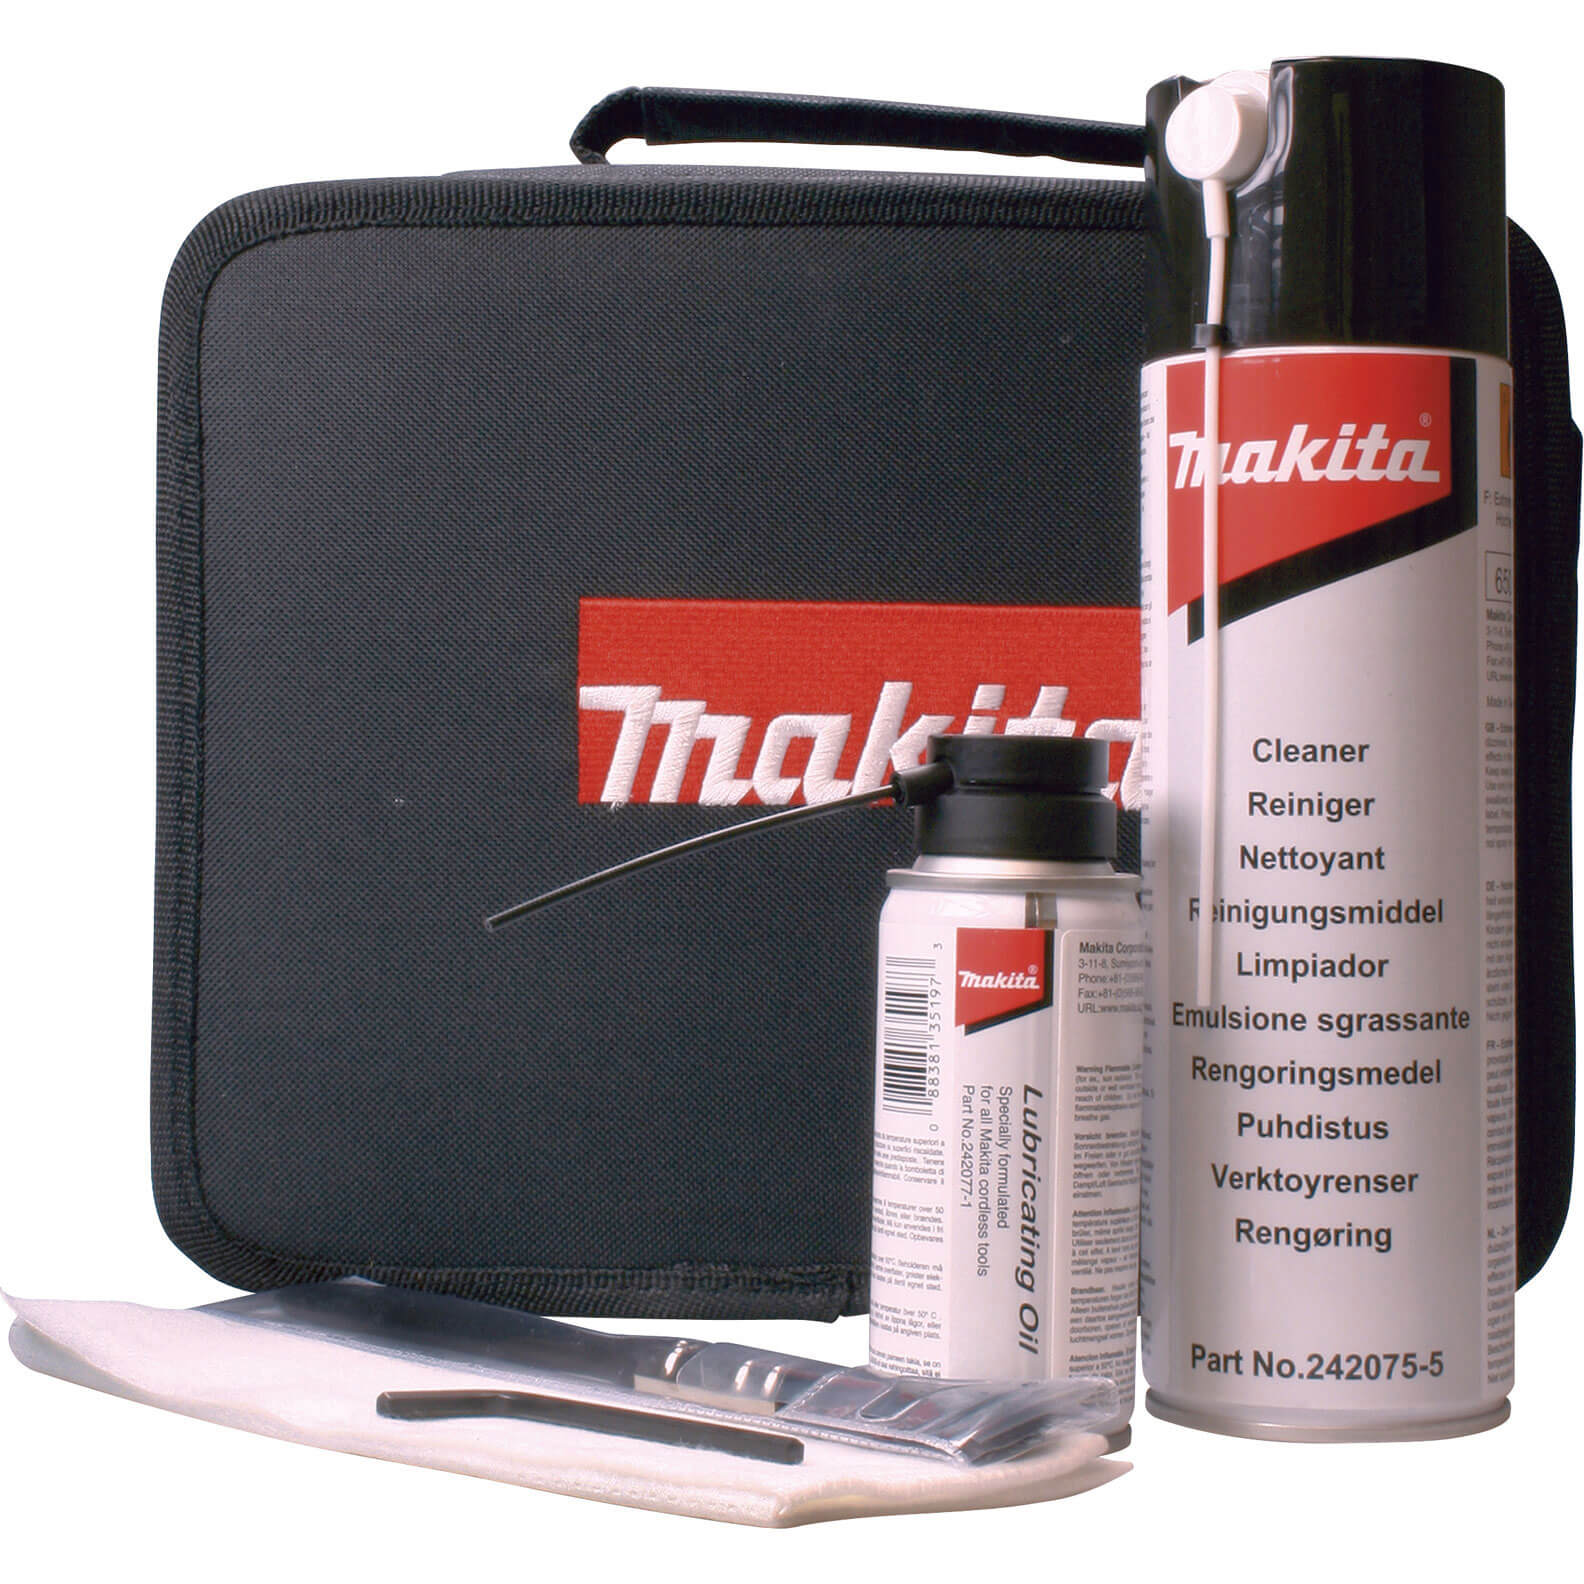 Makita 194852-0 Gas Nailer Cleaning Kit